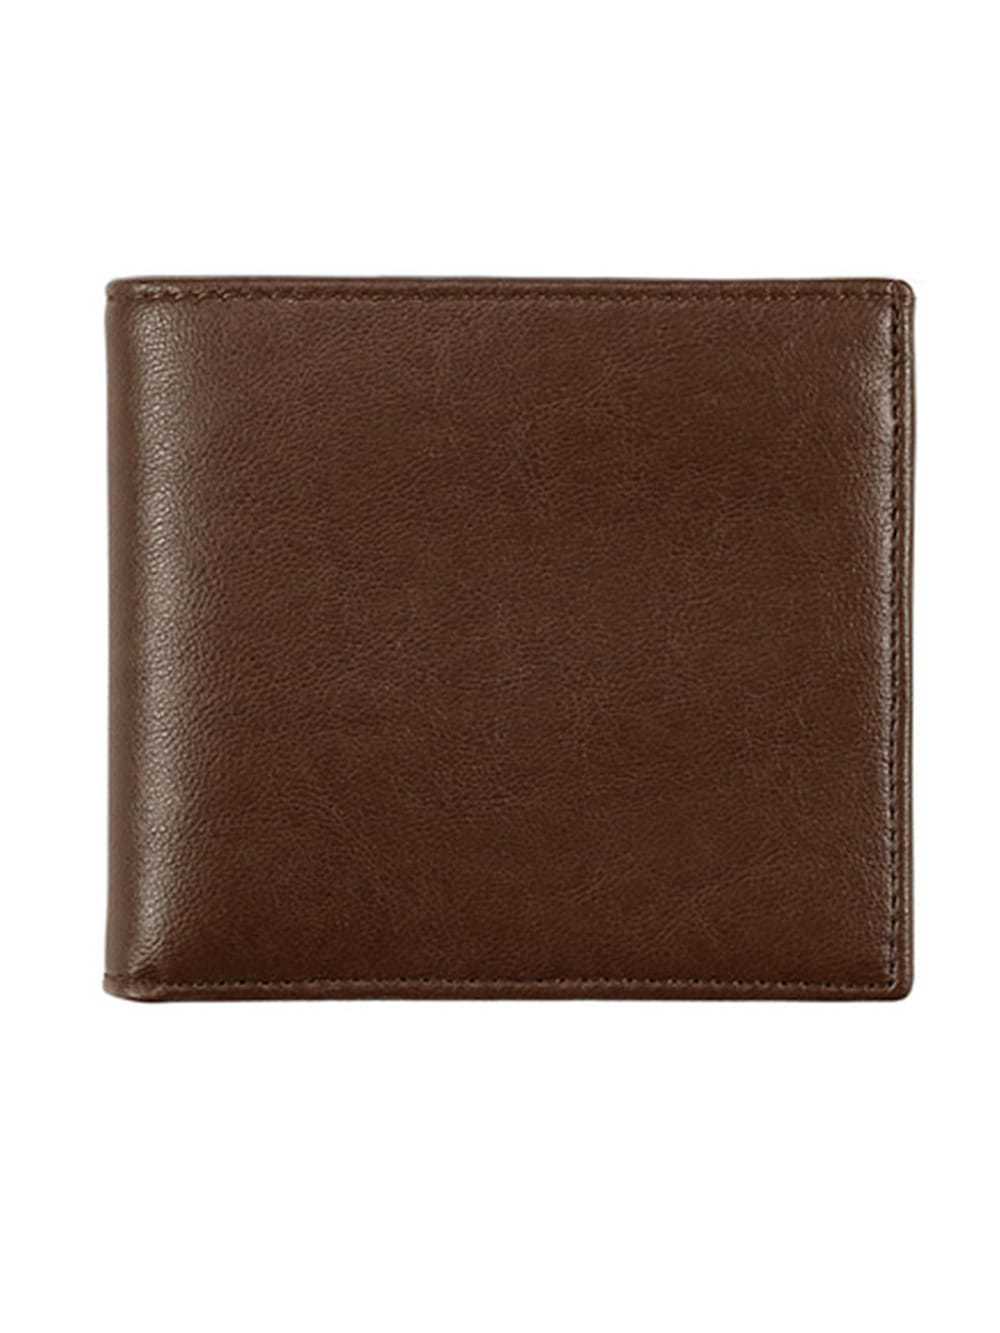 Dark brown bifold wallet